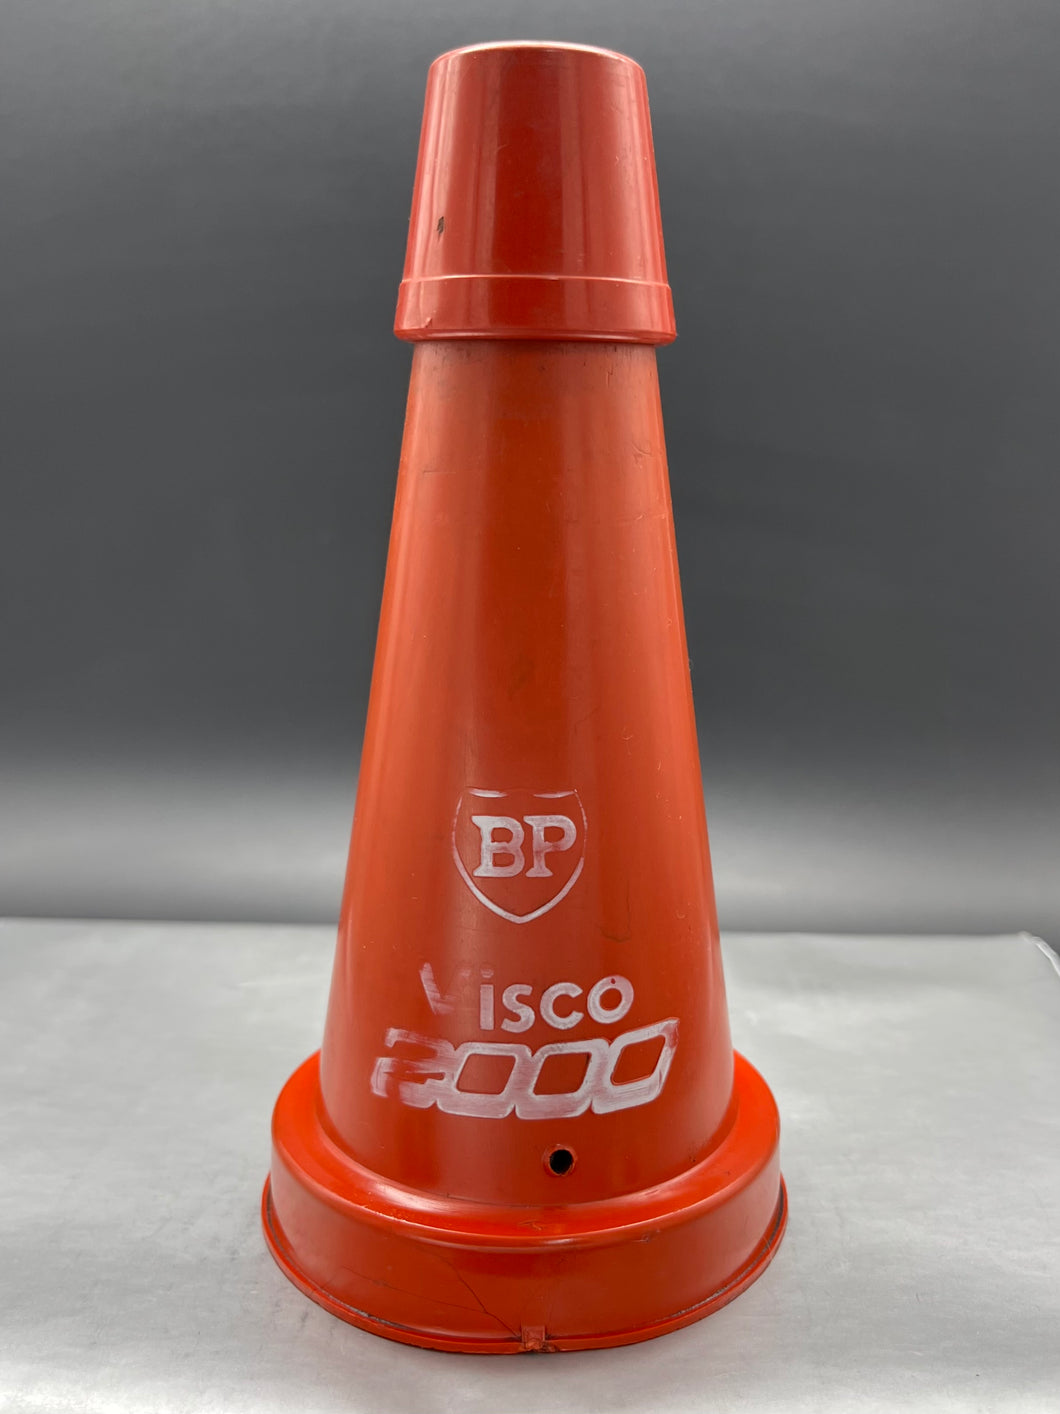 BP Visco 2000 Plastic Top and Cap